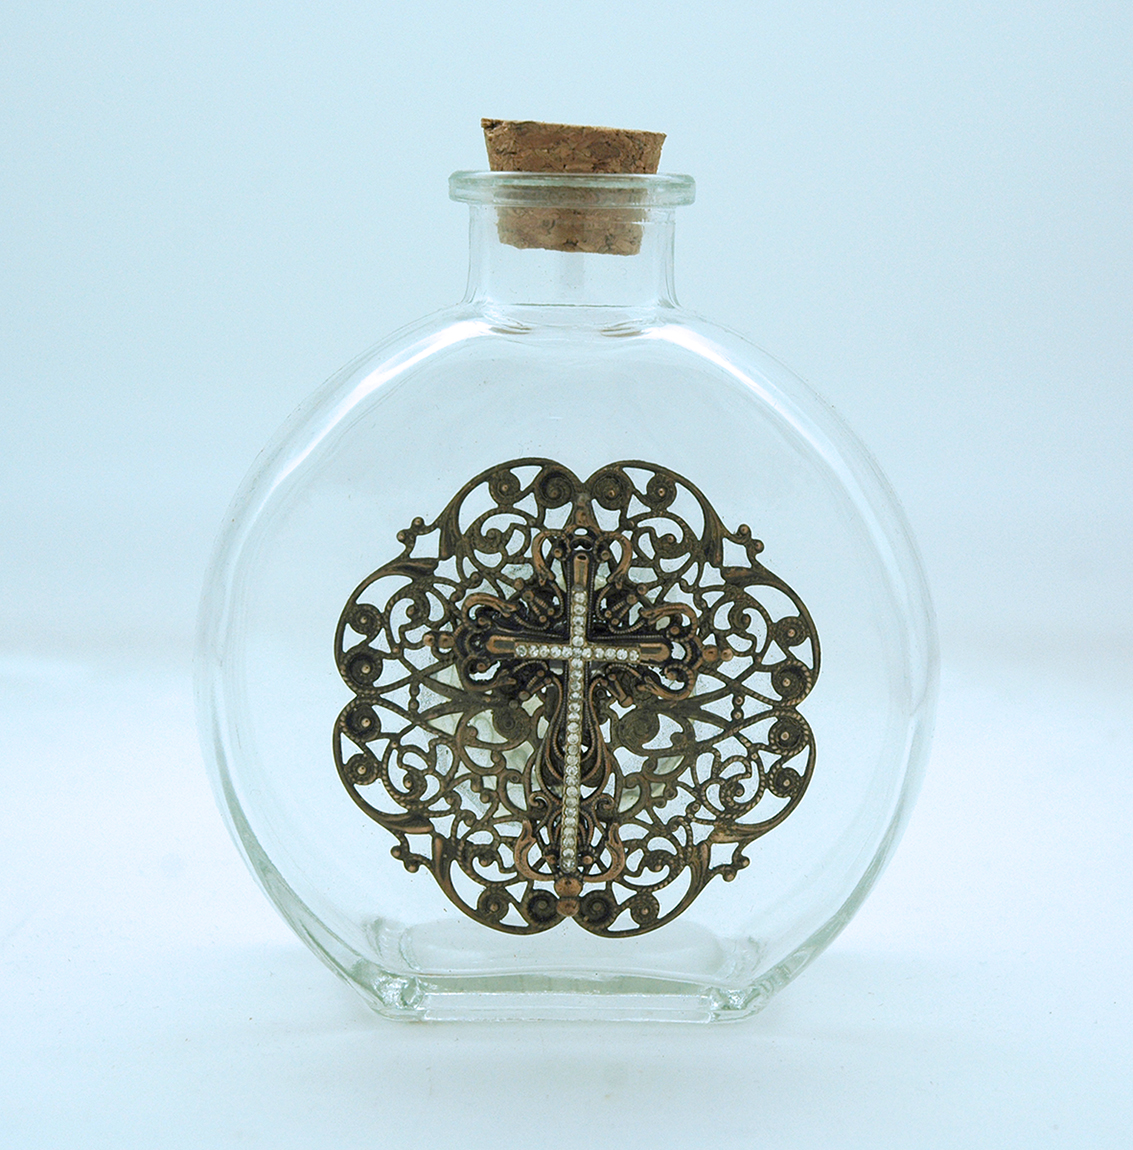 VHWB26 - Vintage Style Holy Water Bottle, Filigree Cross